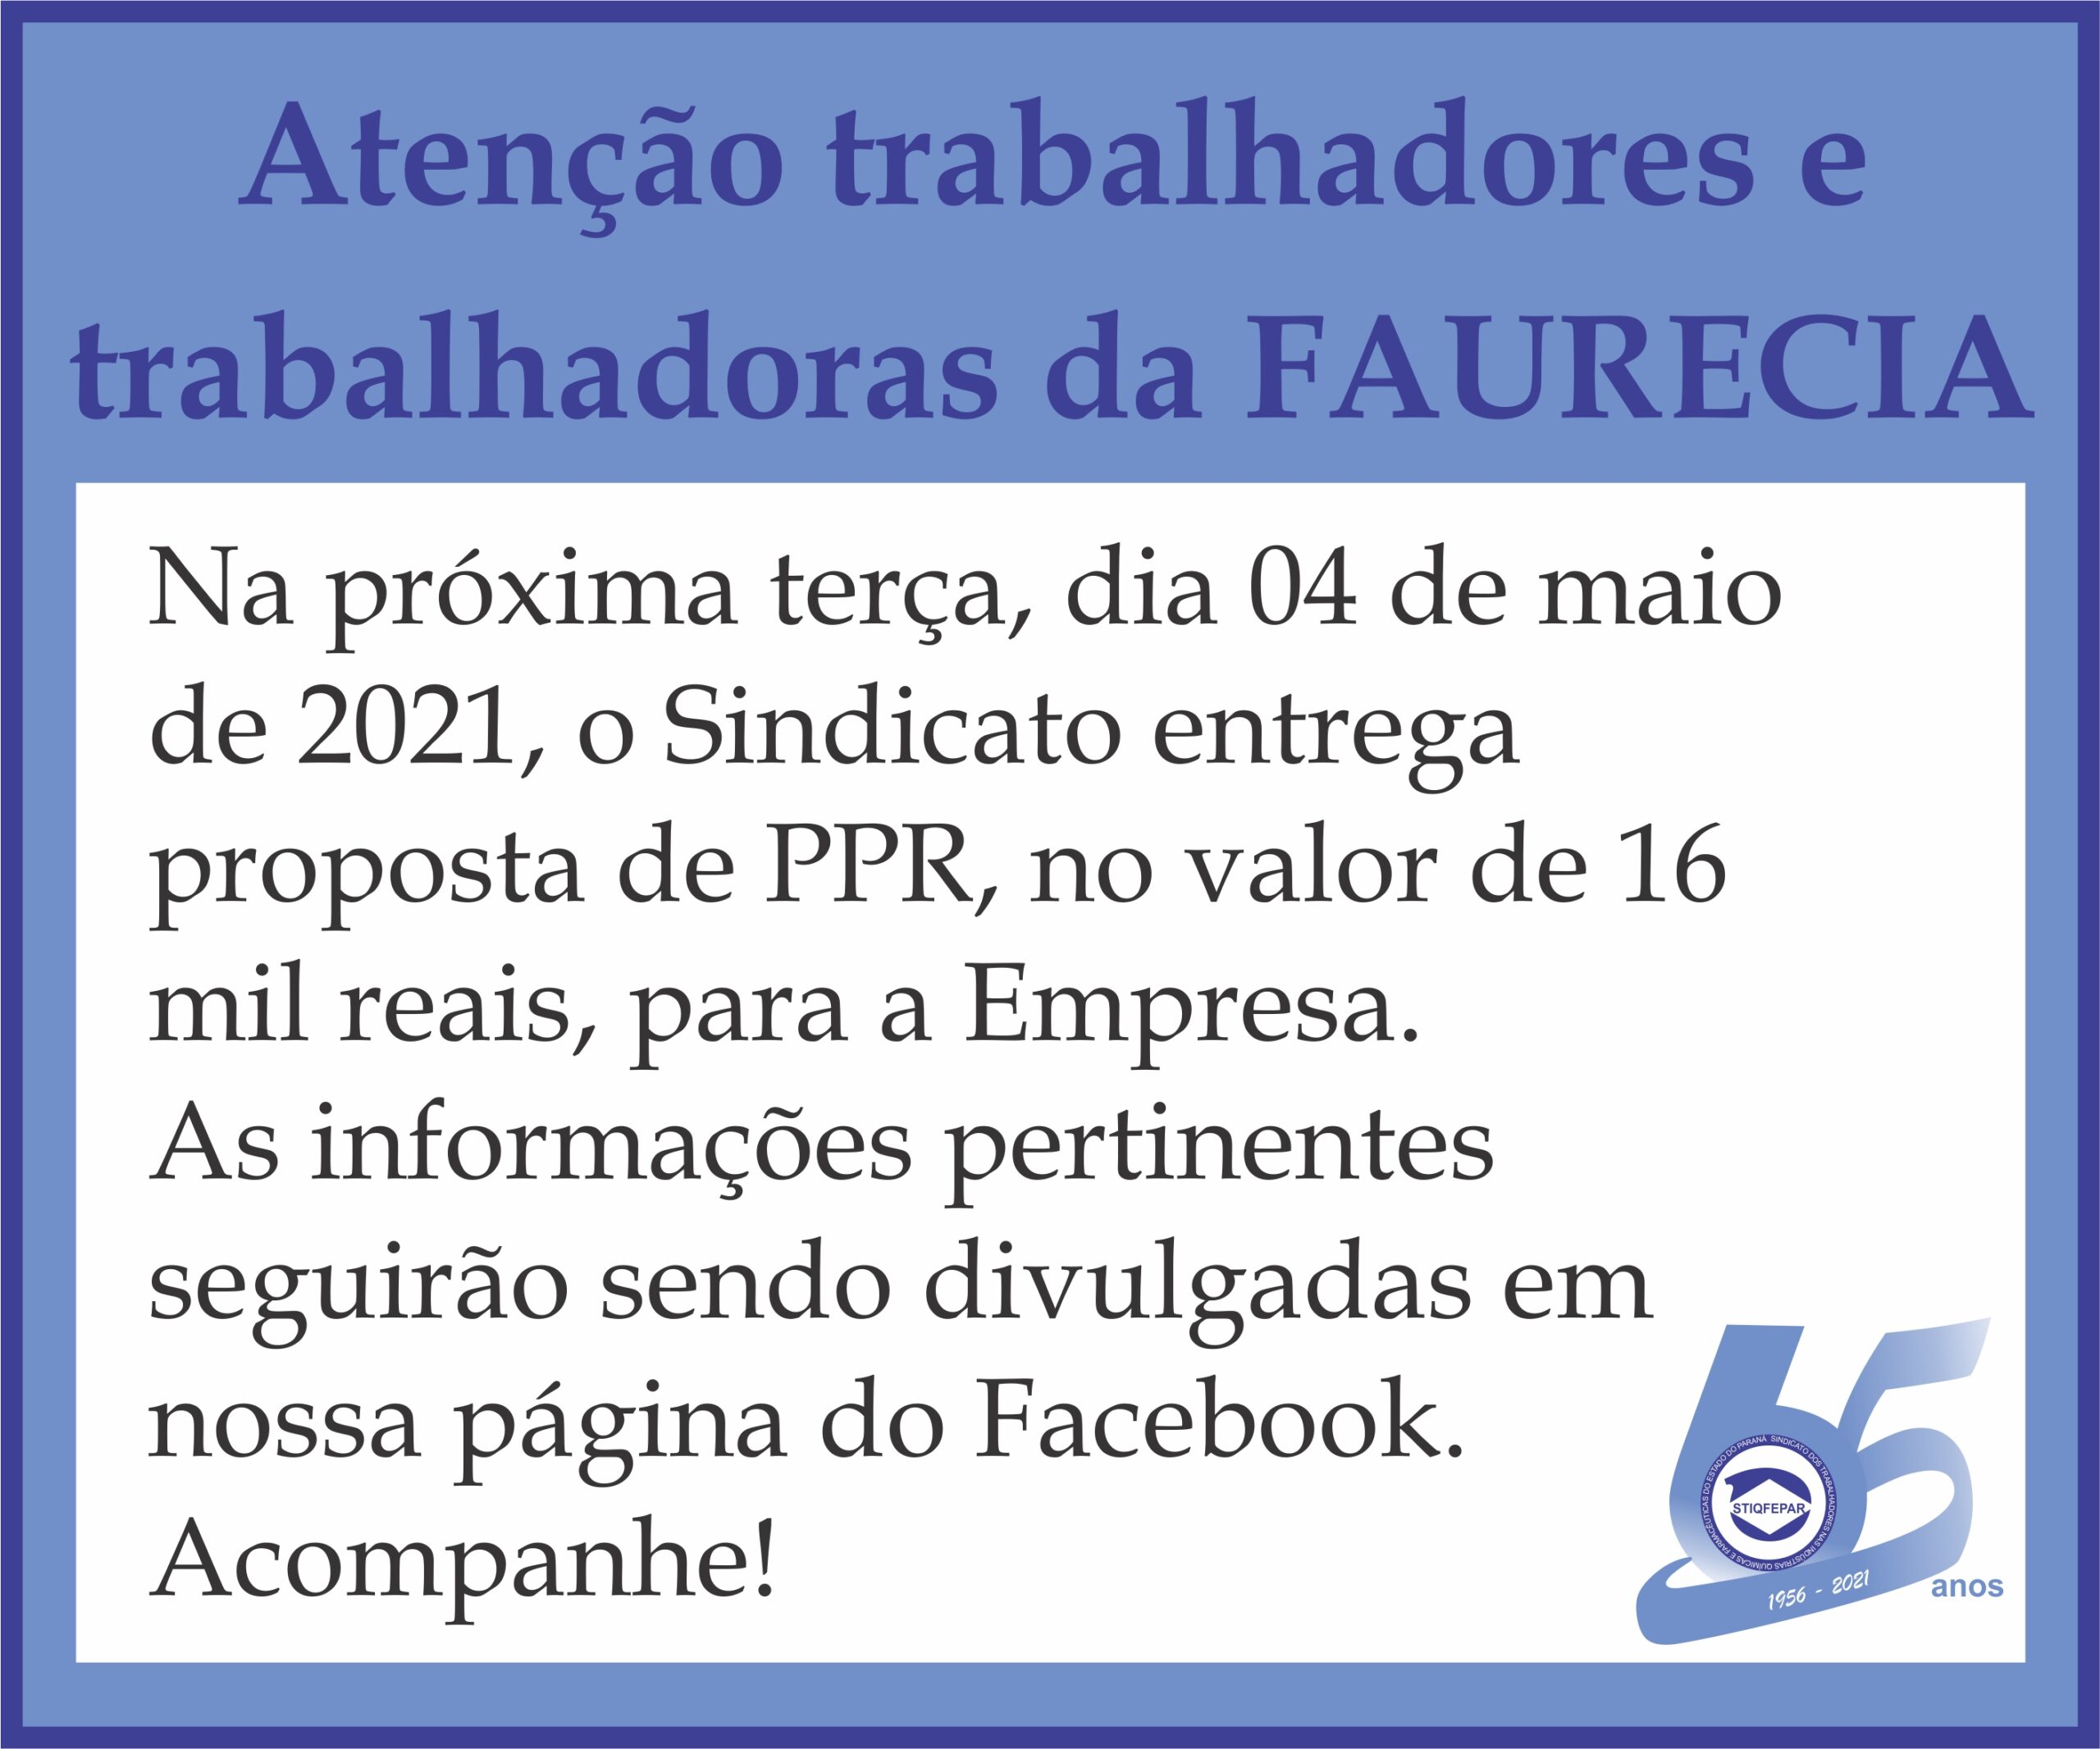 PPR Faurecia